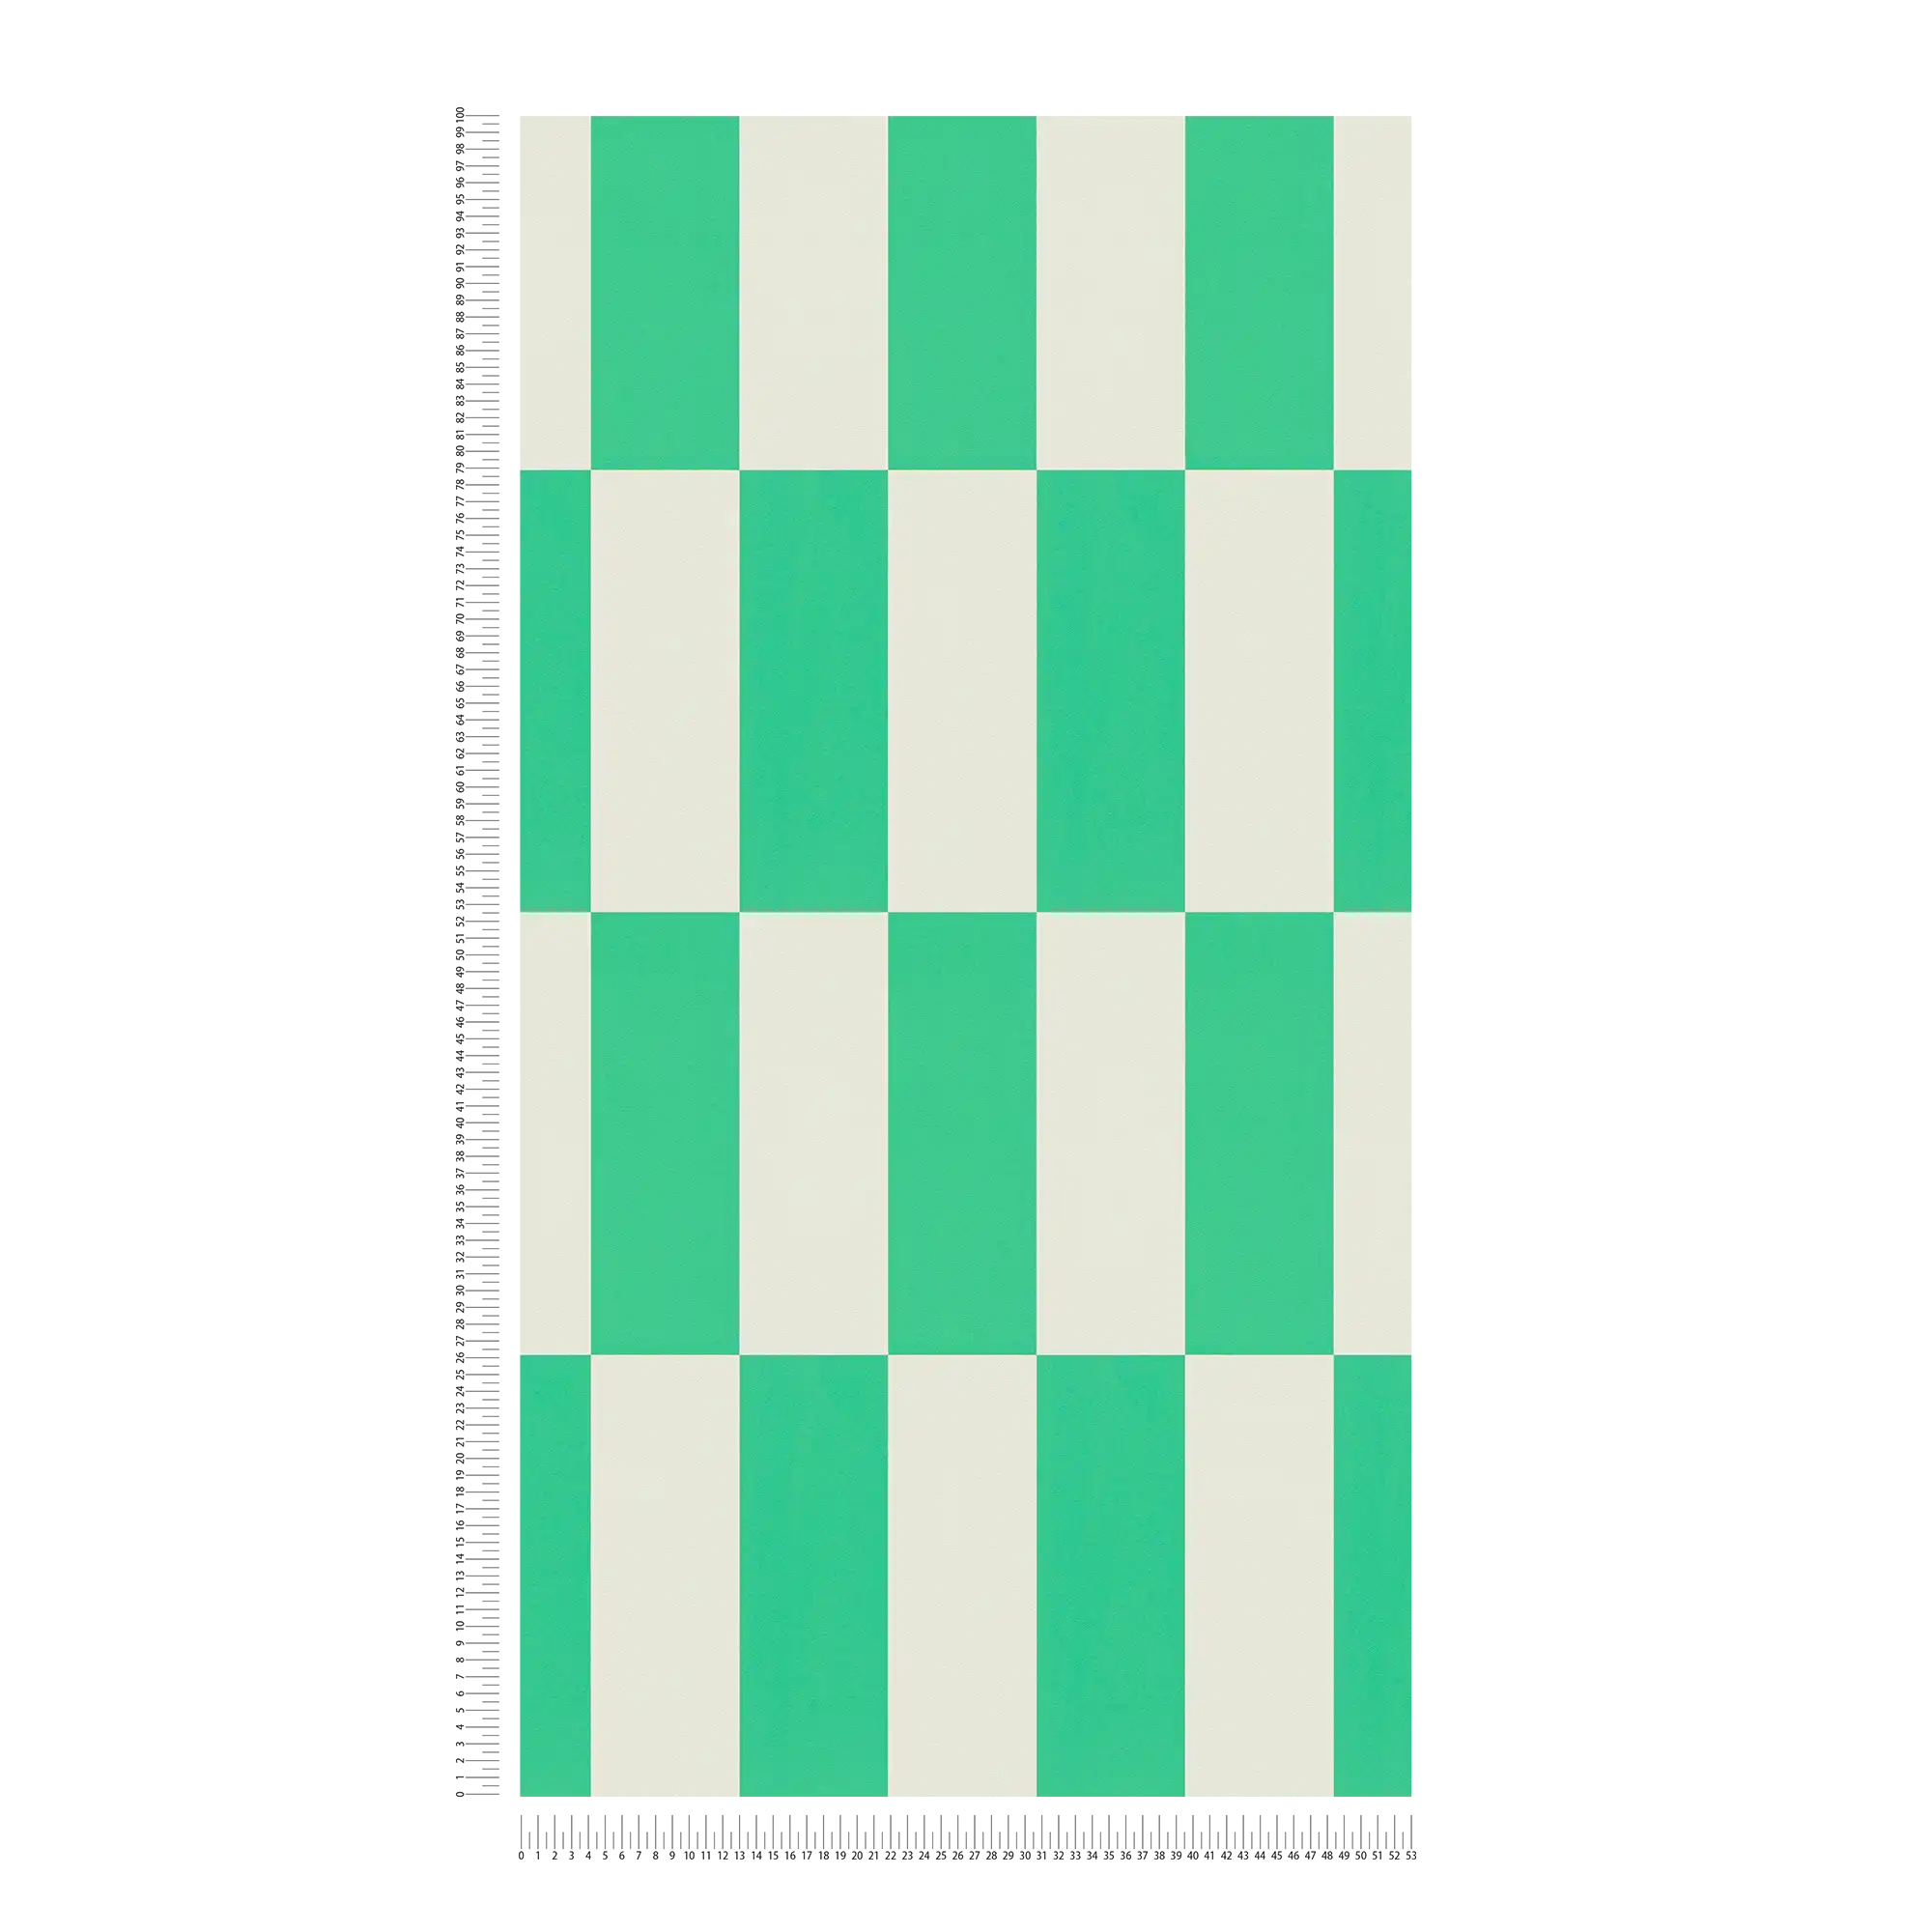             Papel pintado con motivos gráficos cuadrados - verde, blanco
        